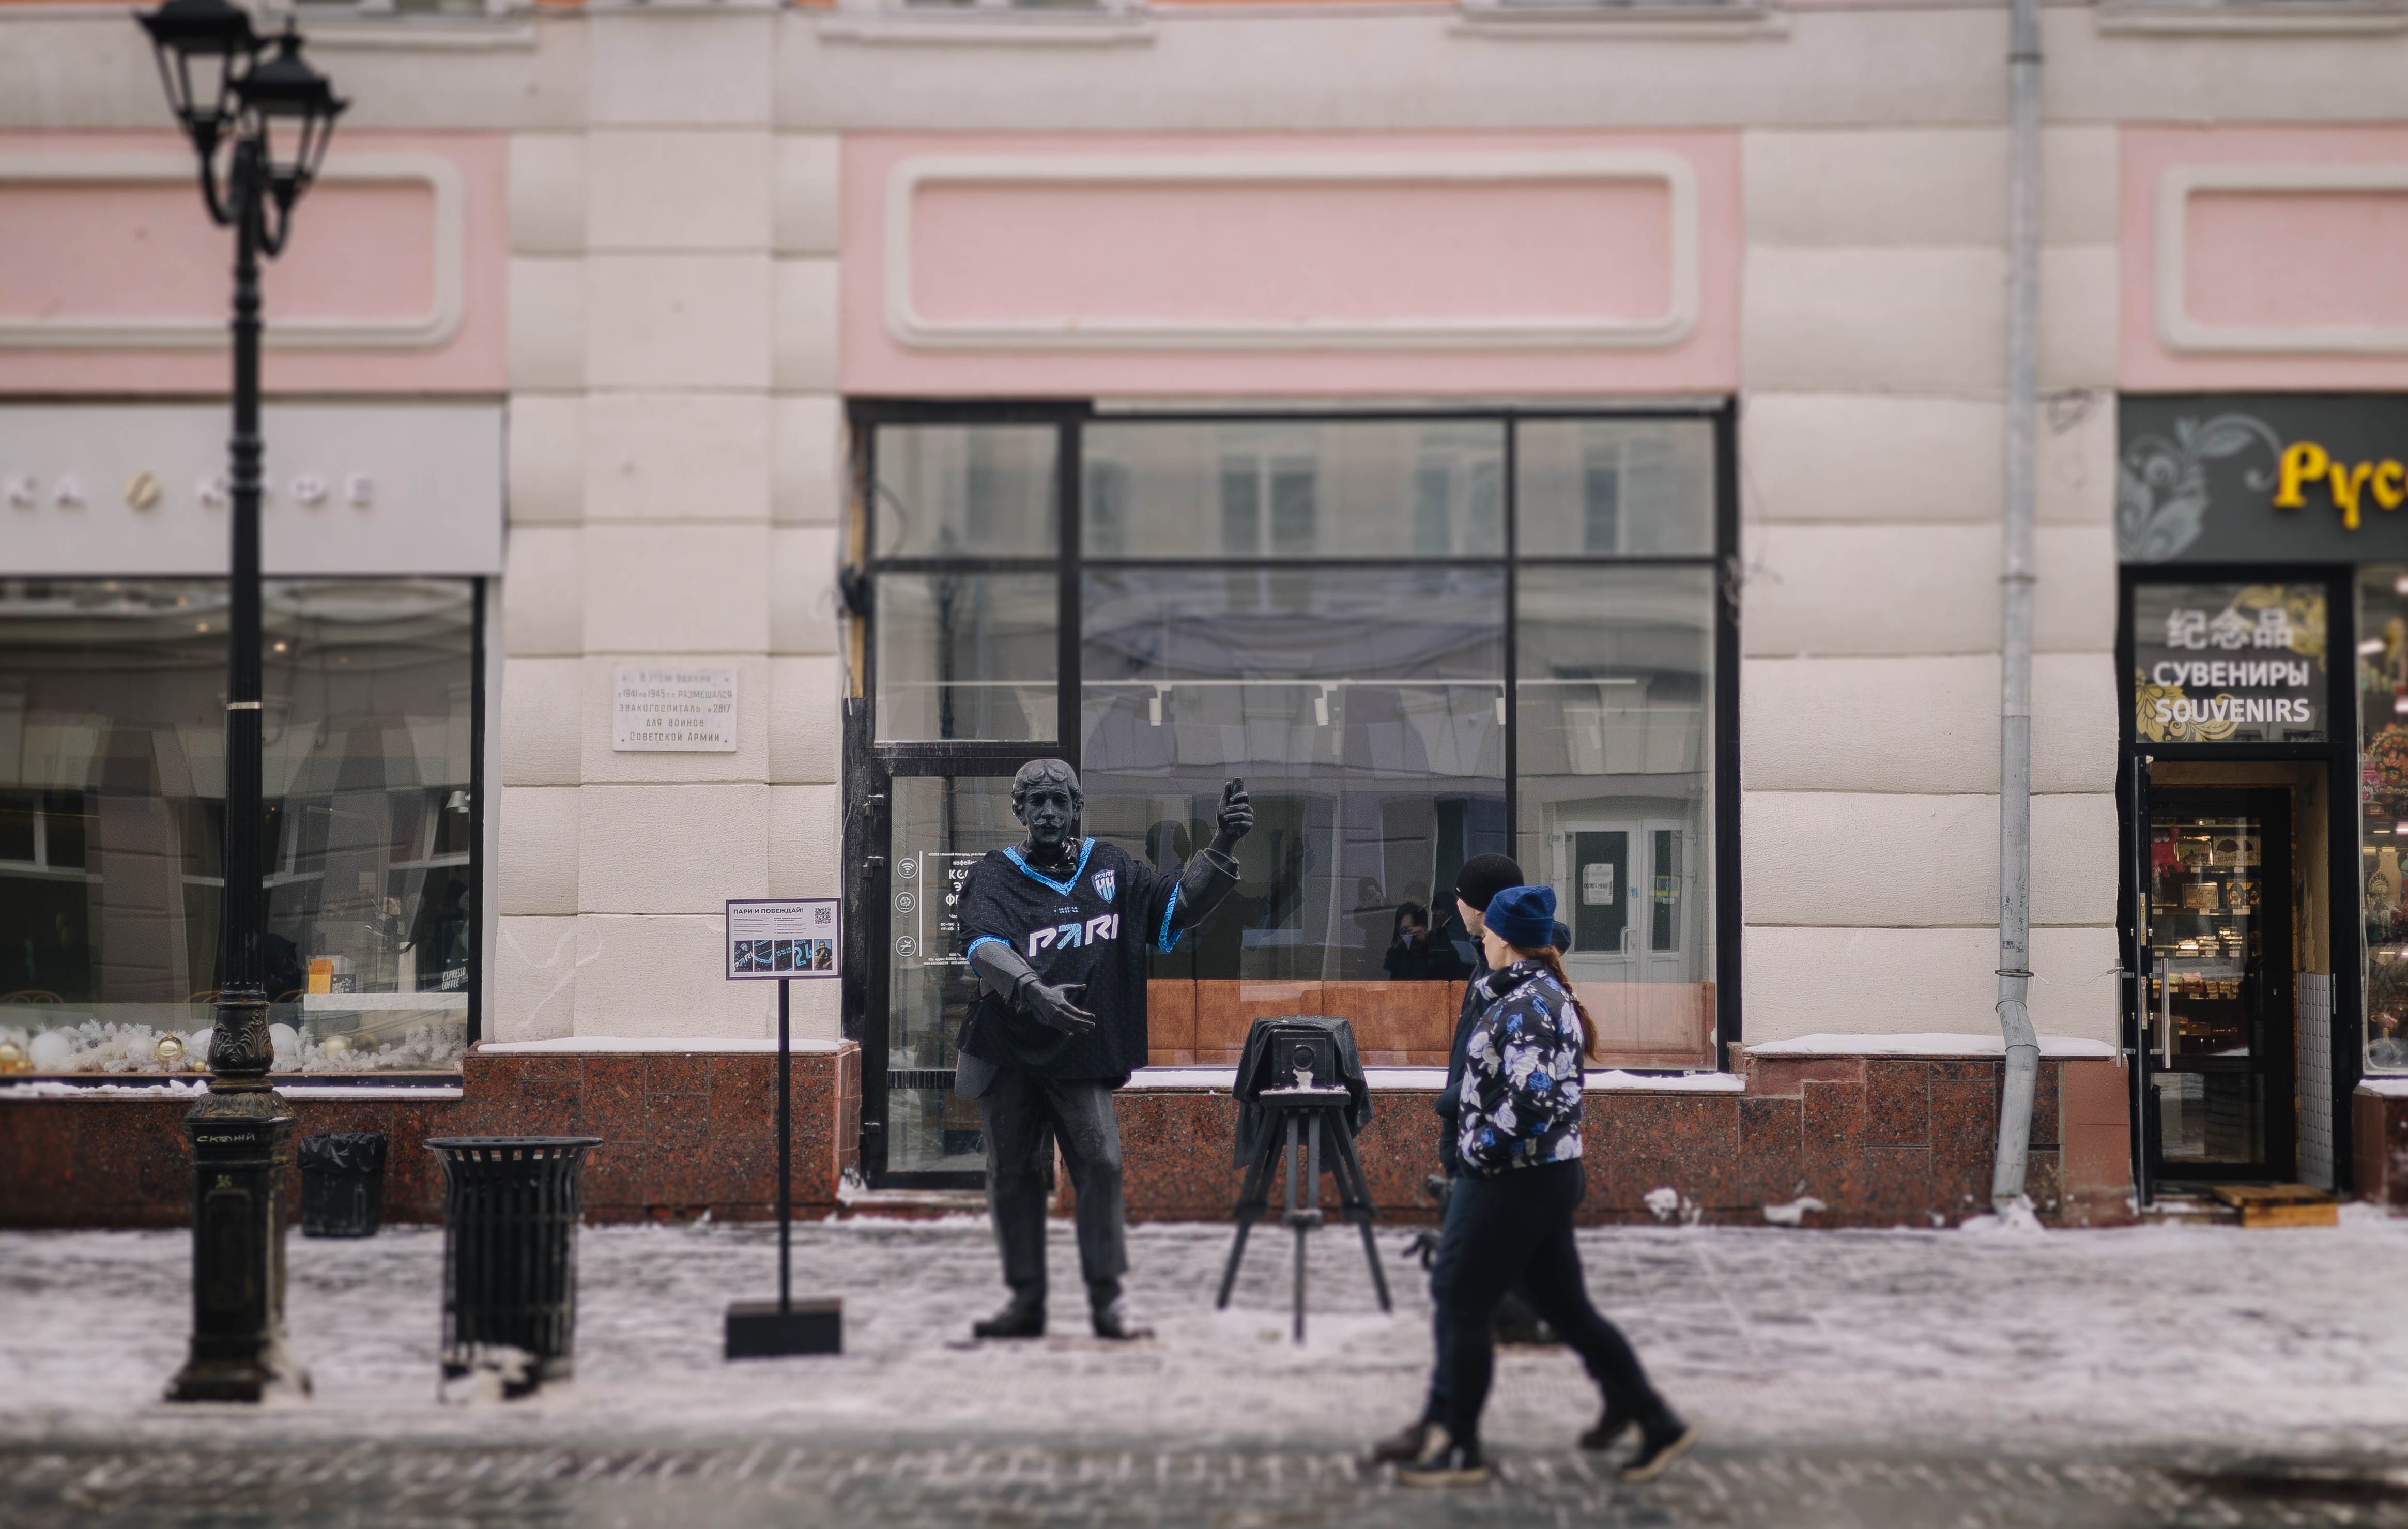 В Нижнем Новгороде городские скульптуры «переодели» в футболки «Пари НН»